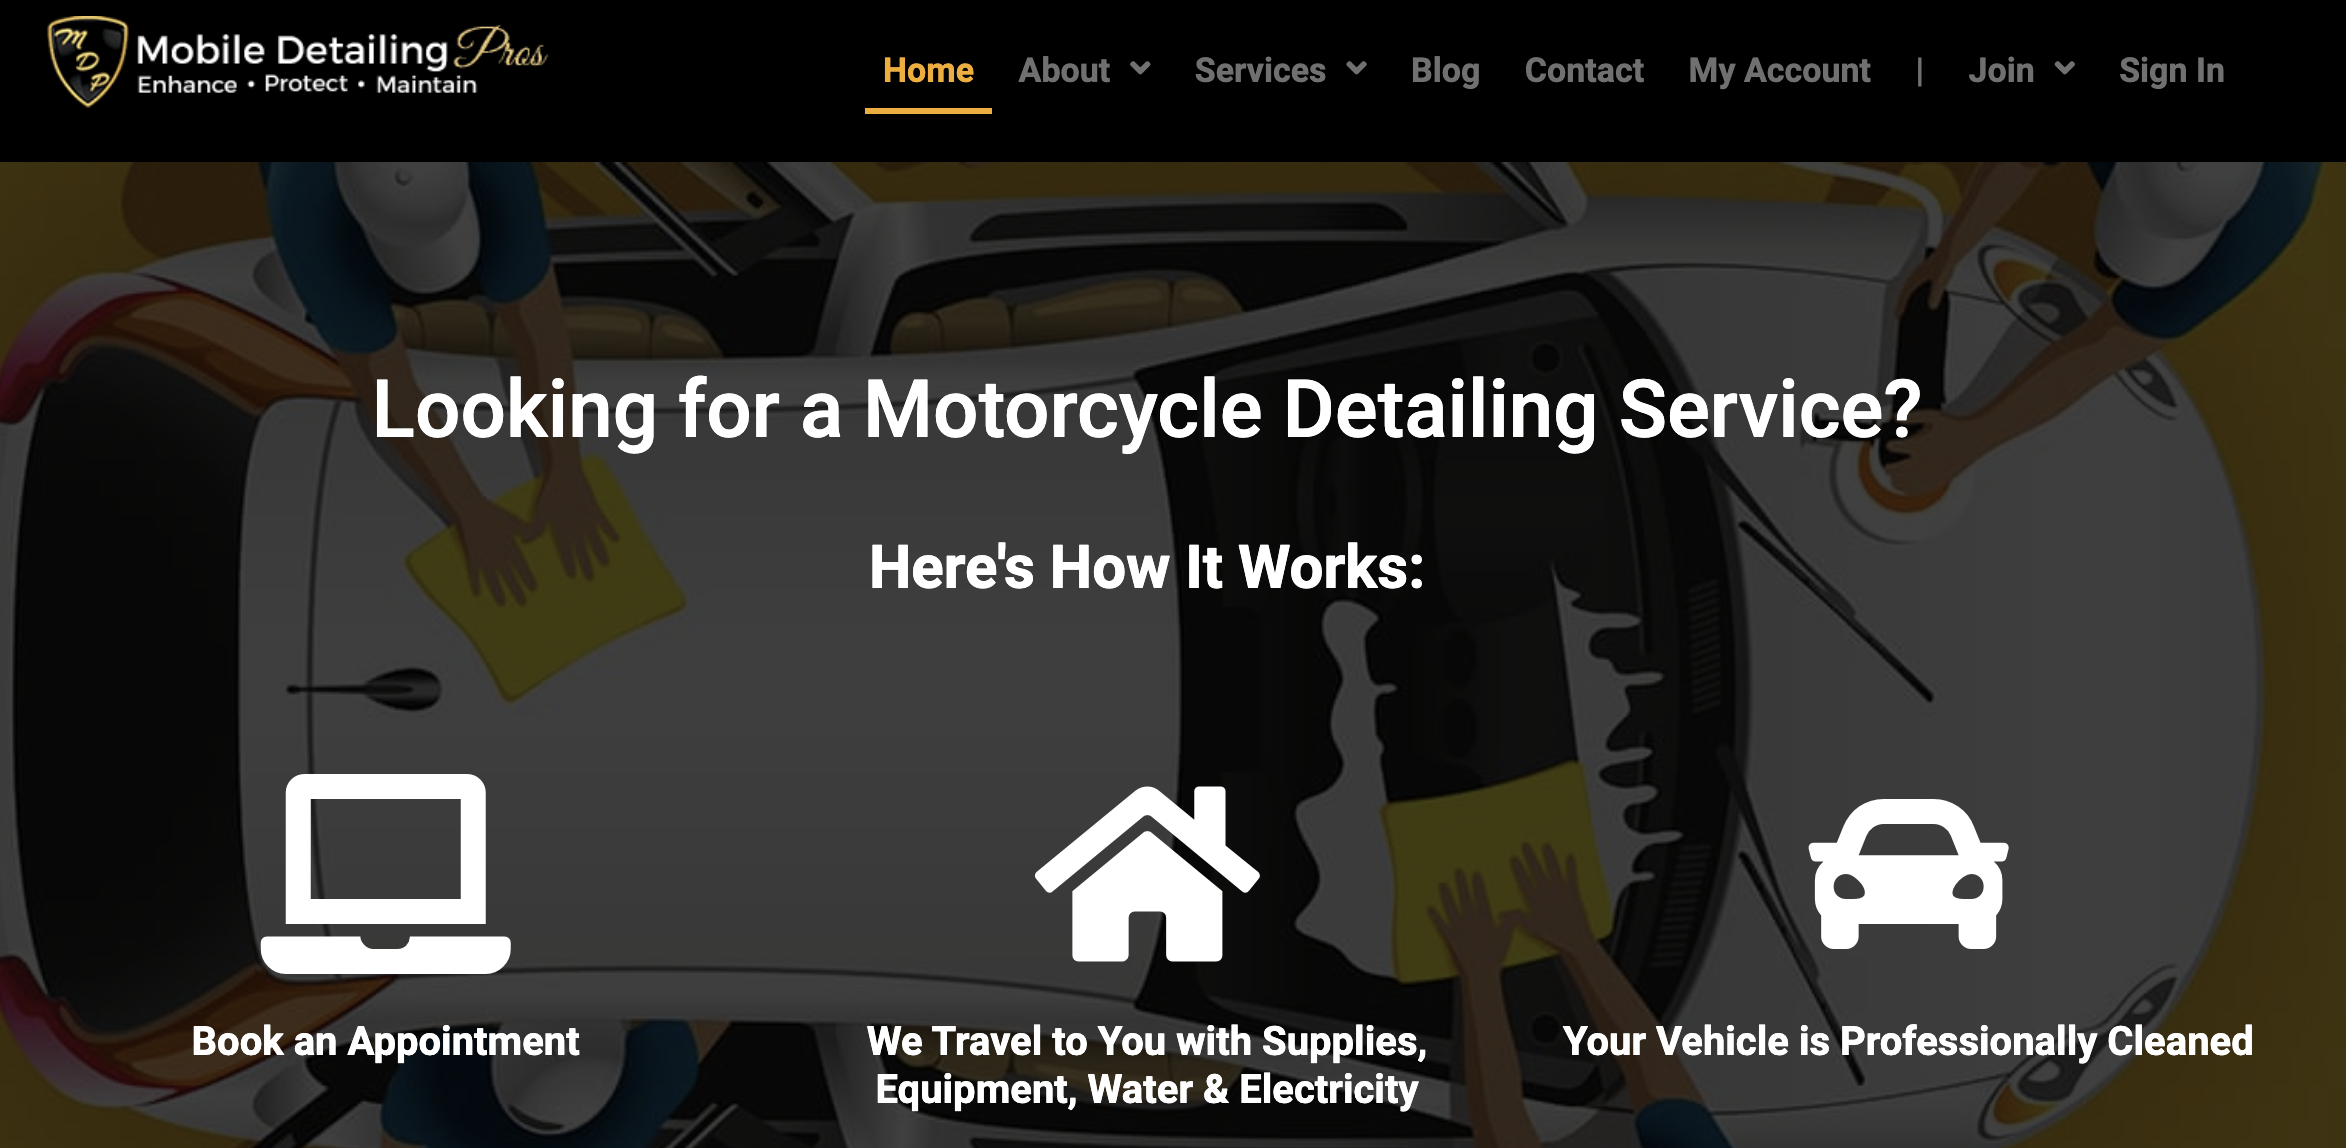 mobile detailing pros best websites cars